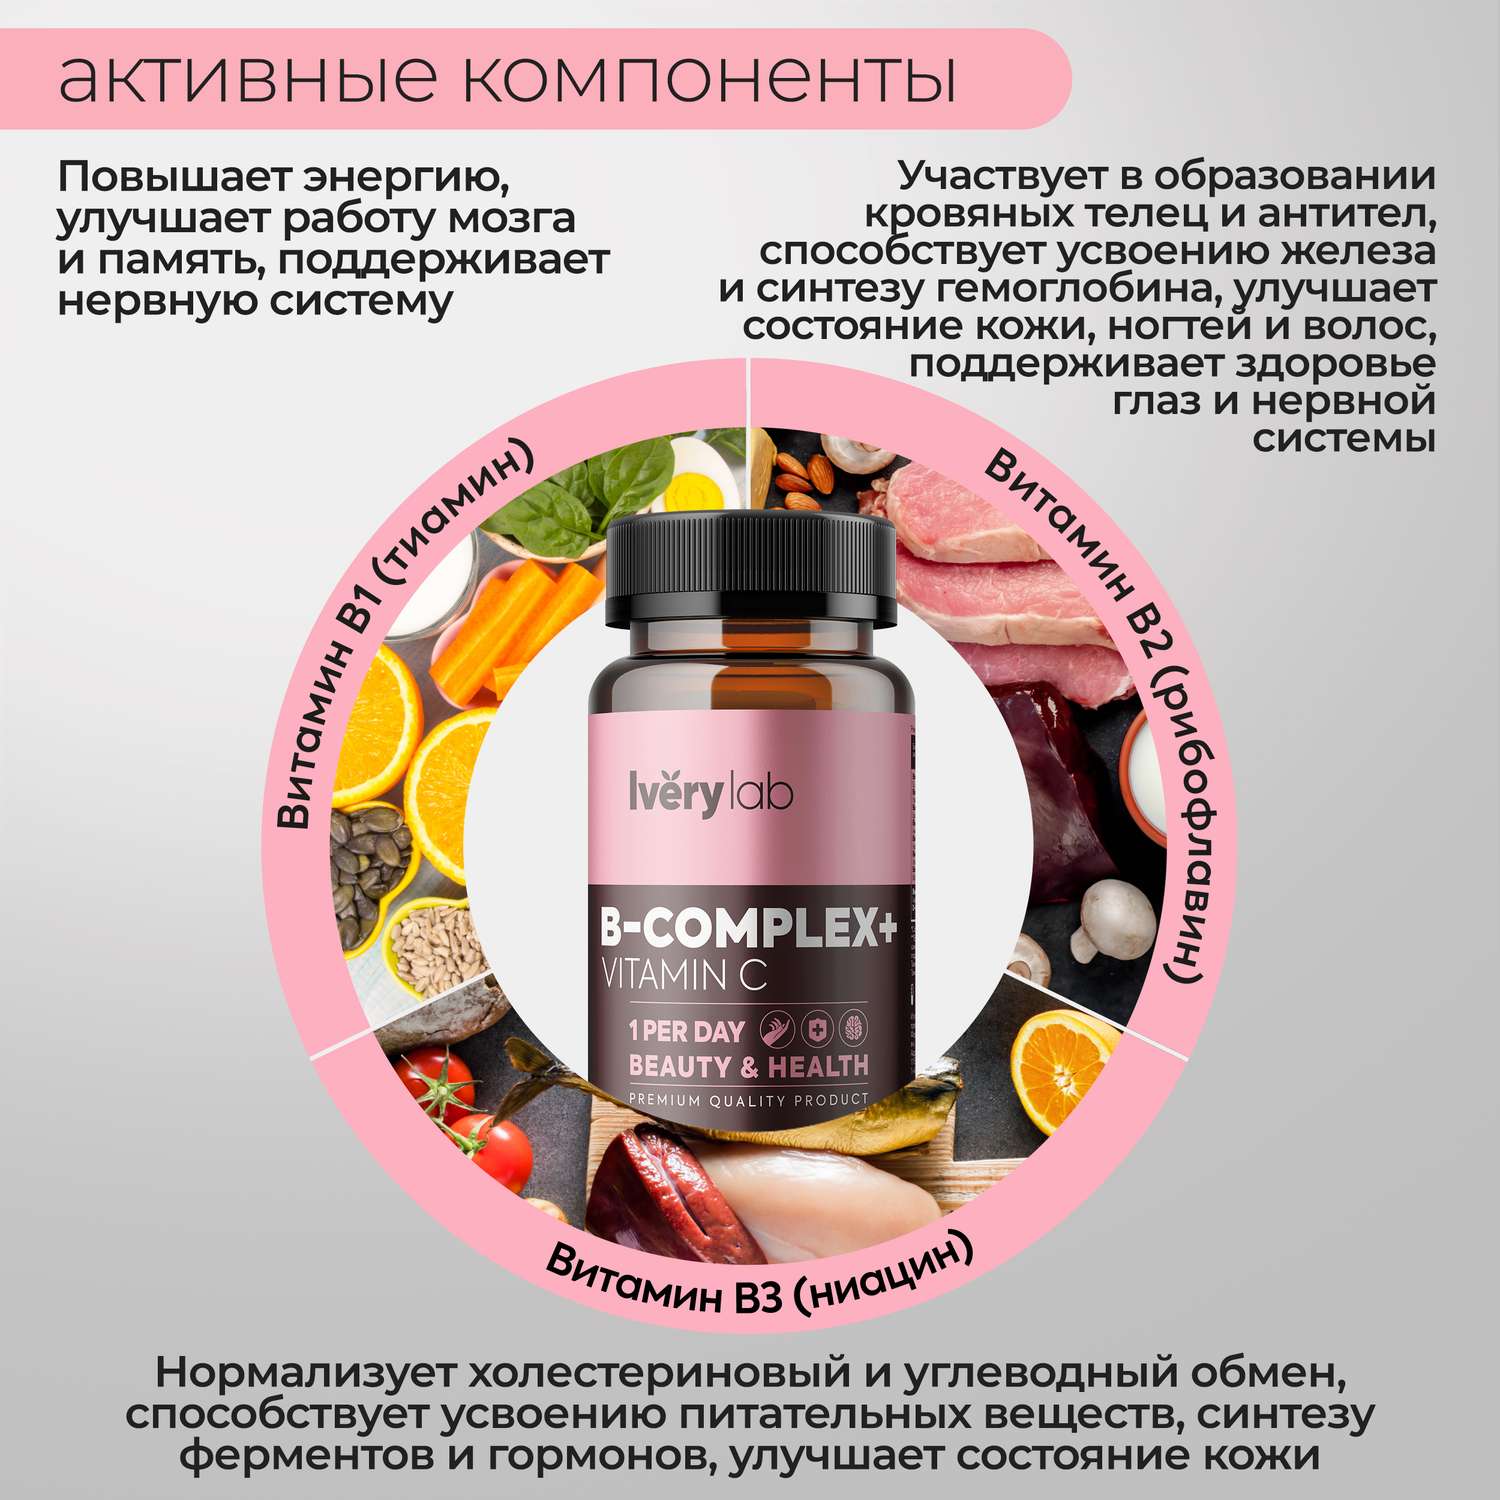 БАД Iverylab Комплекс витаминов B и С для красоты и здоровья - фото 5